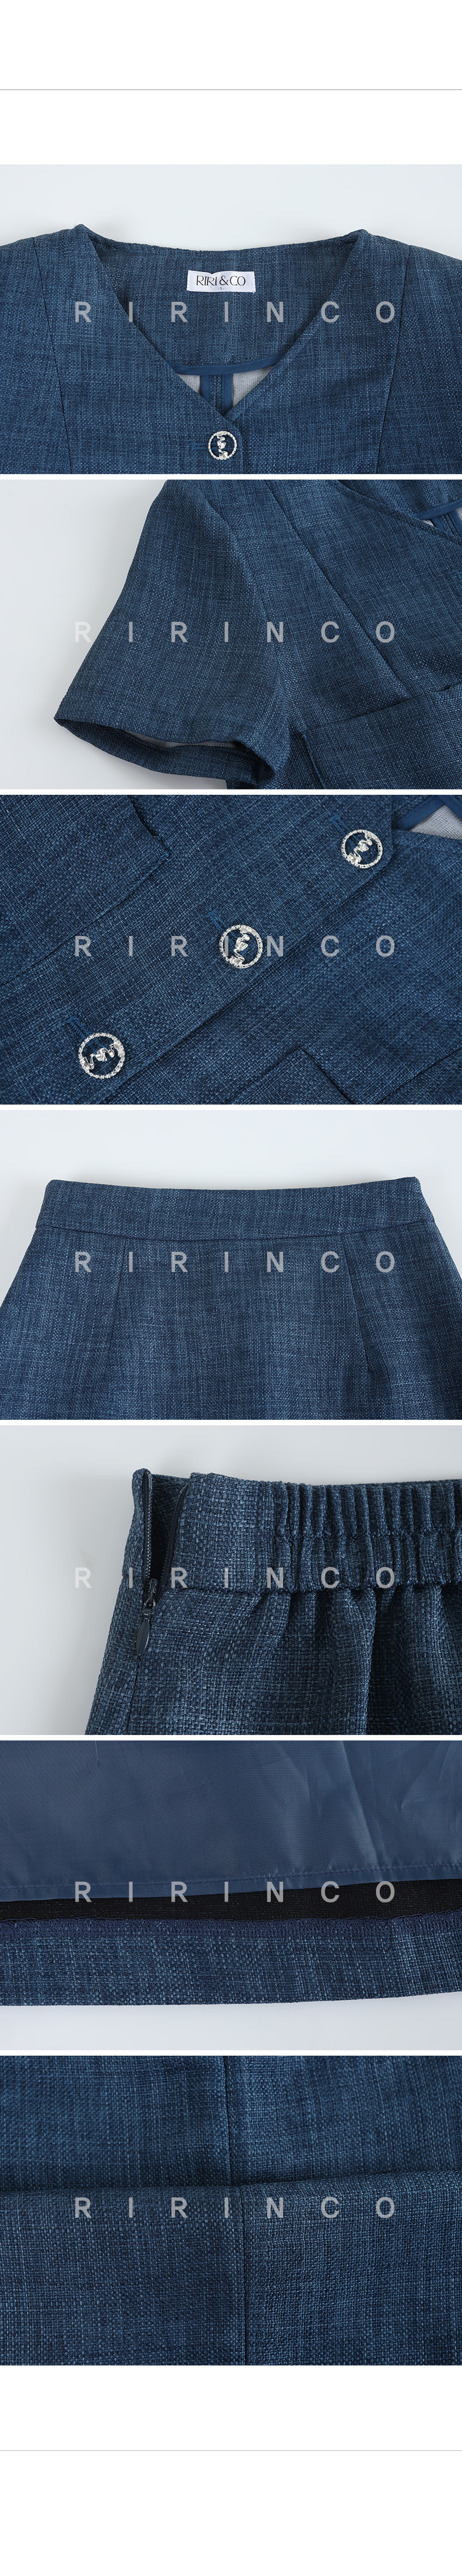 RIRINCO ツイードクロップドジャケット&後ろゴムミニスカート上下セット